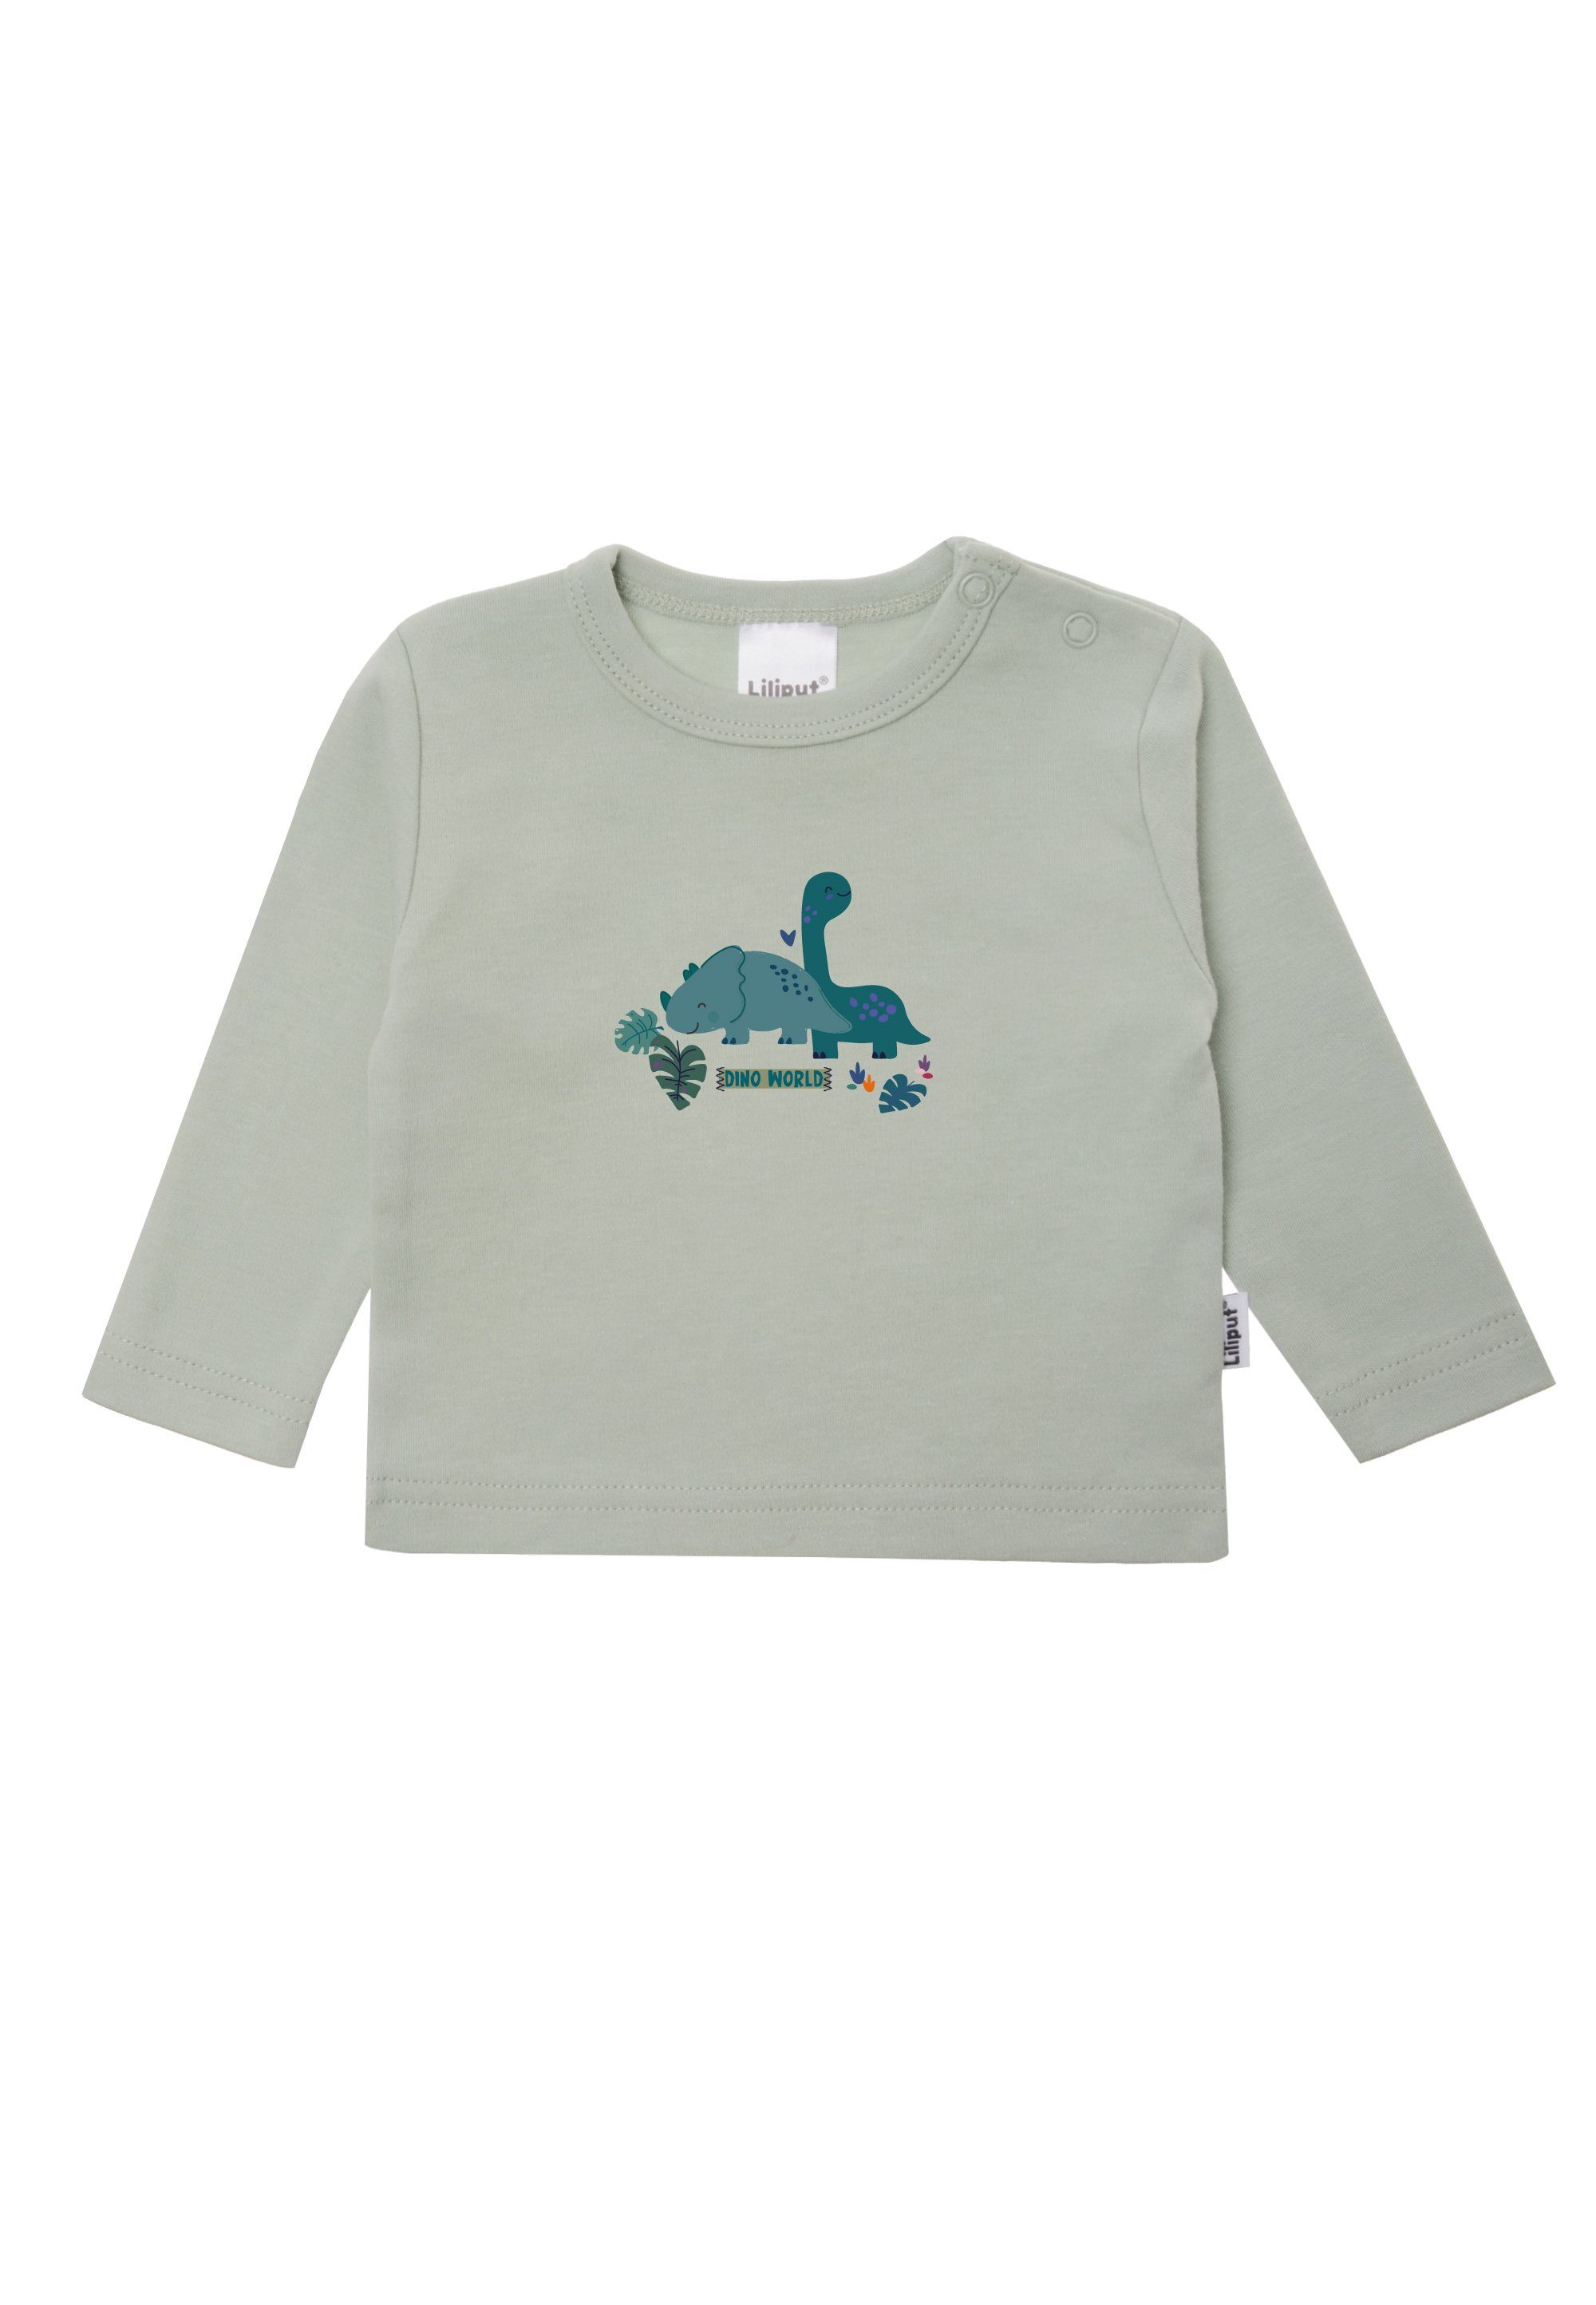 Liliput T-Shirt Dino Baumwoll-Material weichem aus